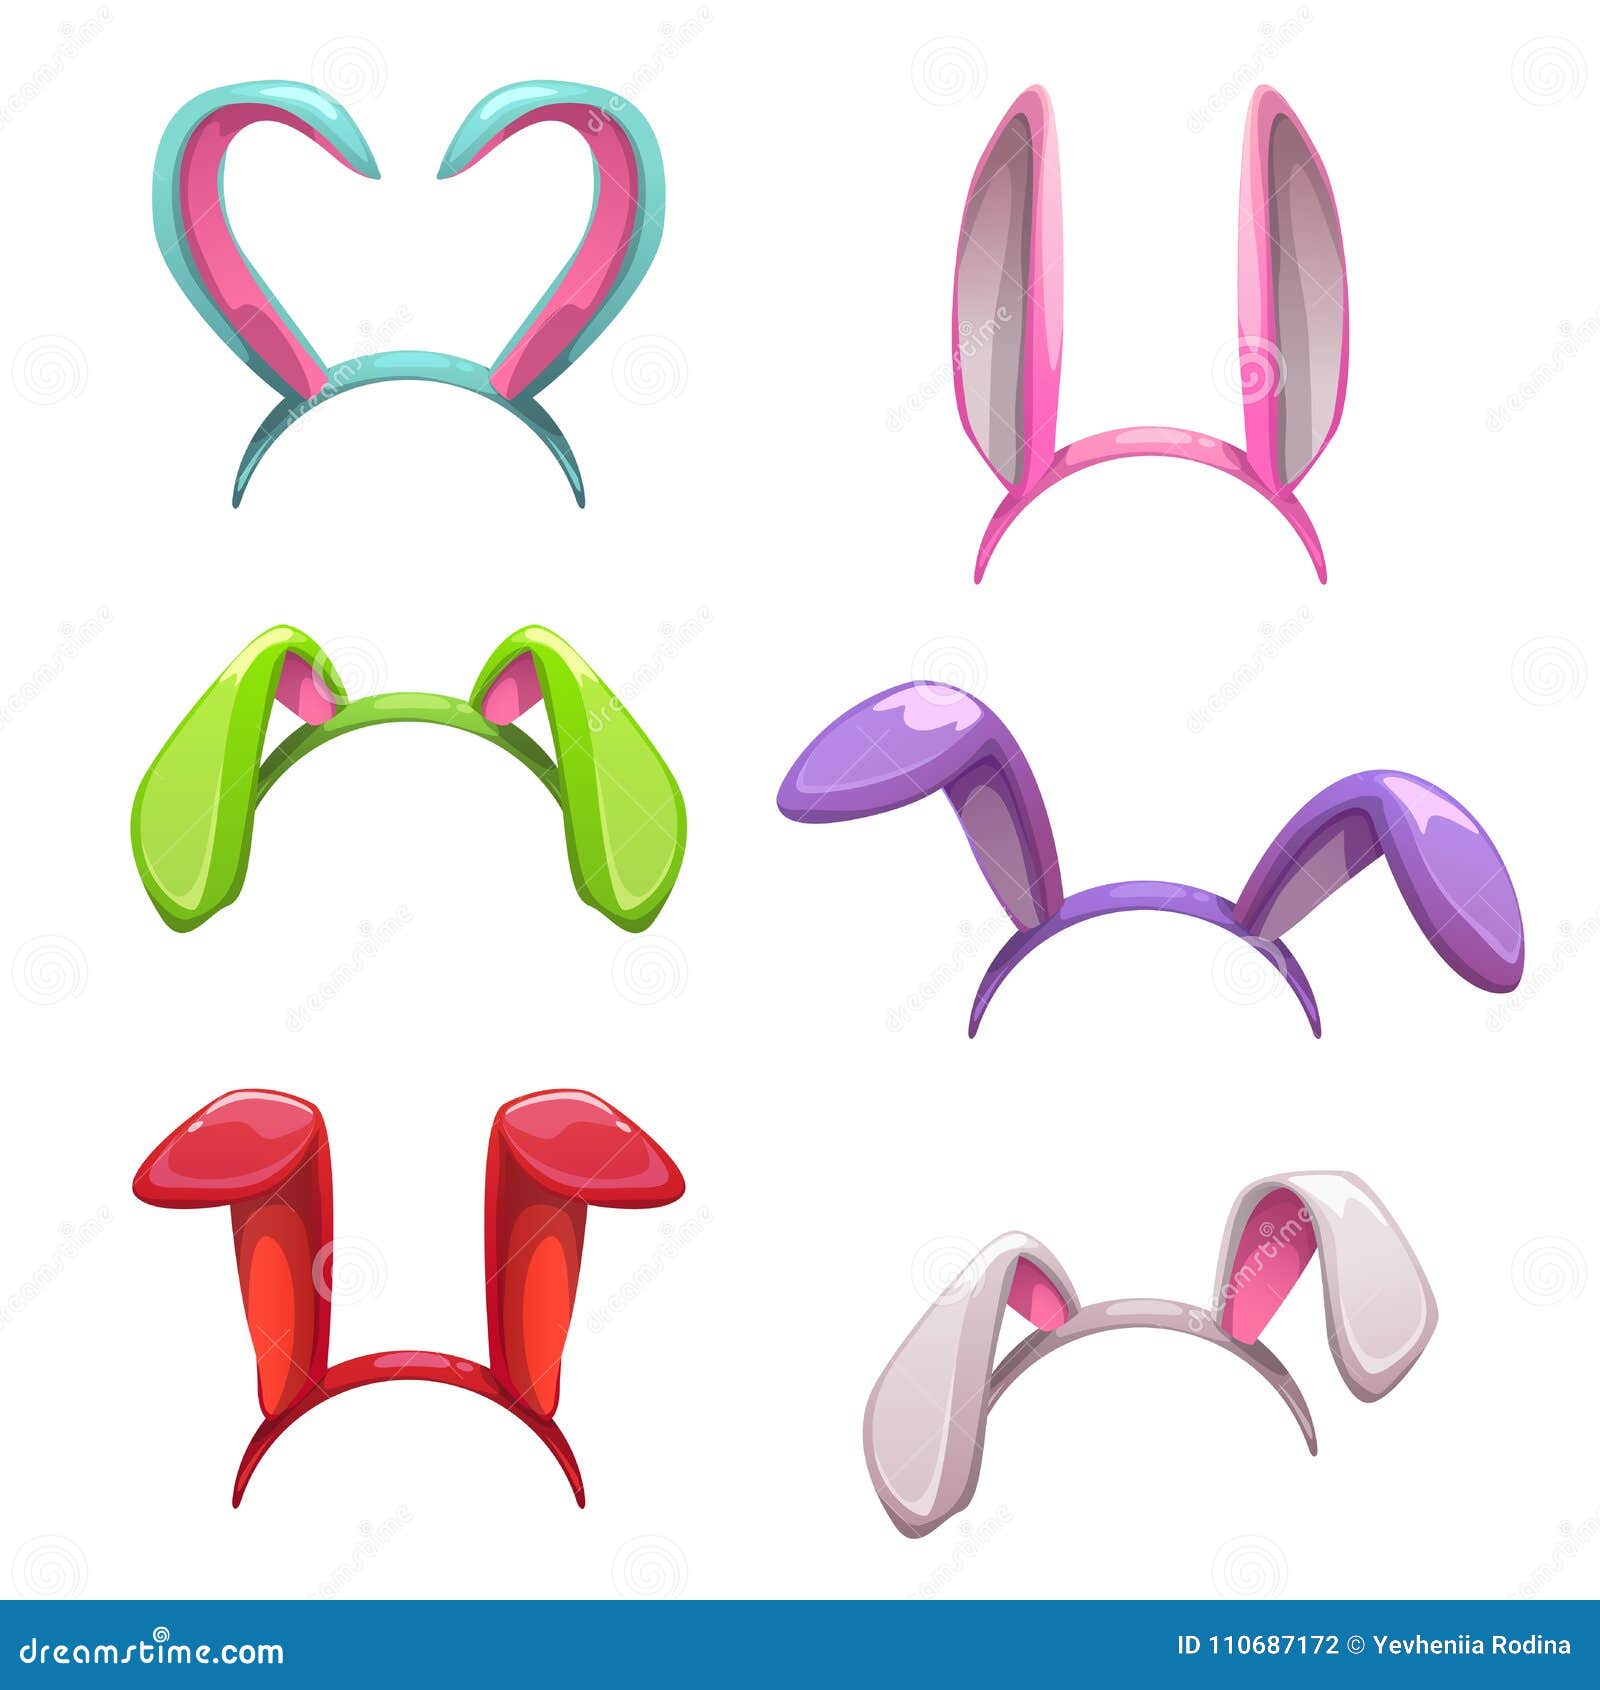 cute colorful bunny ears decor.